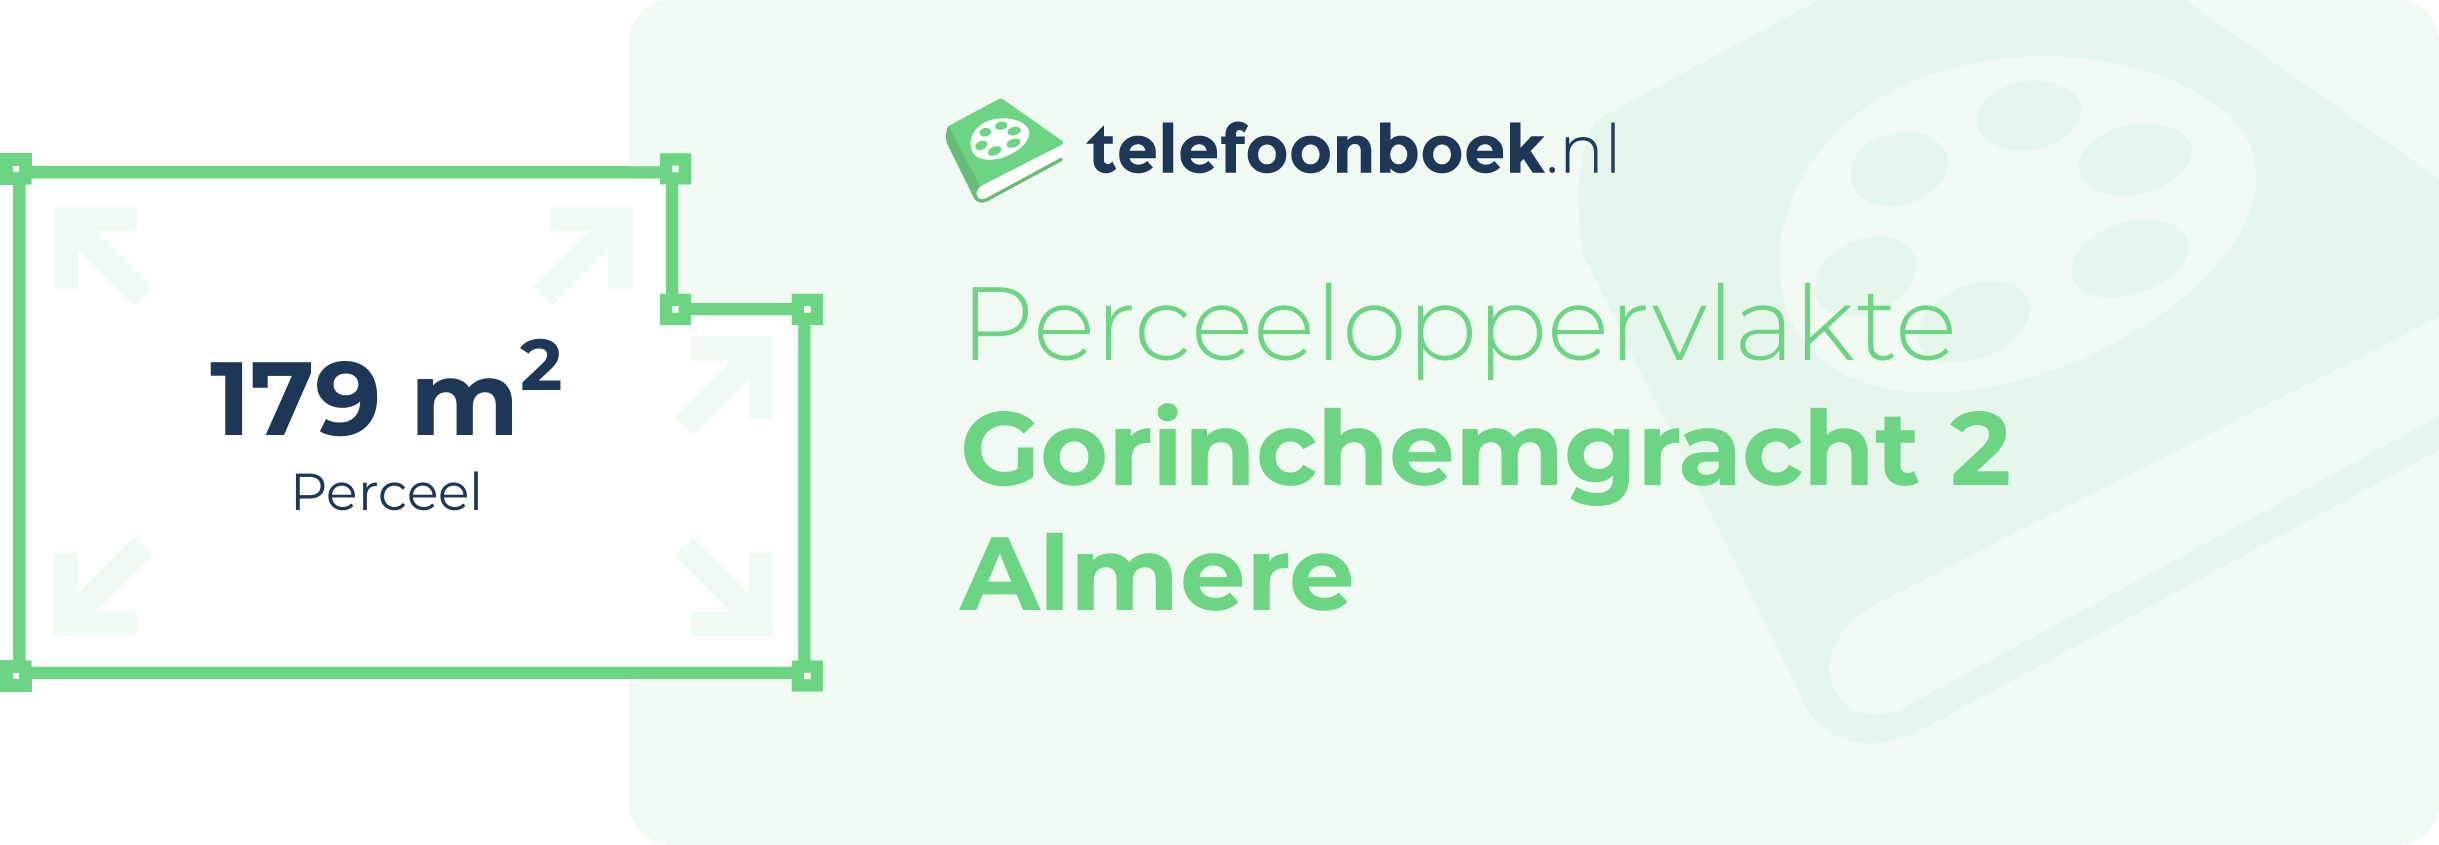 Perceeloppervlakte Gorinchemgracht 2 Almere